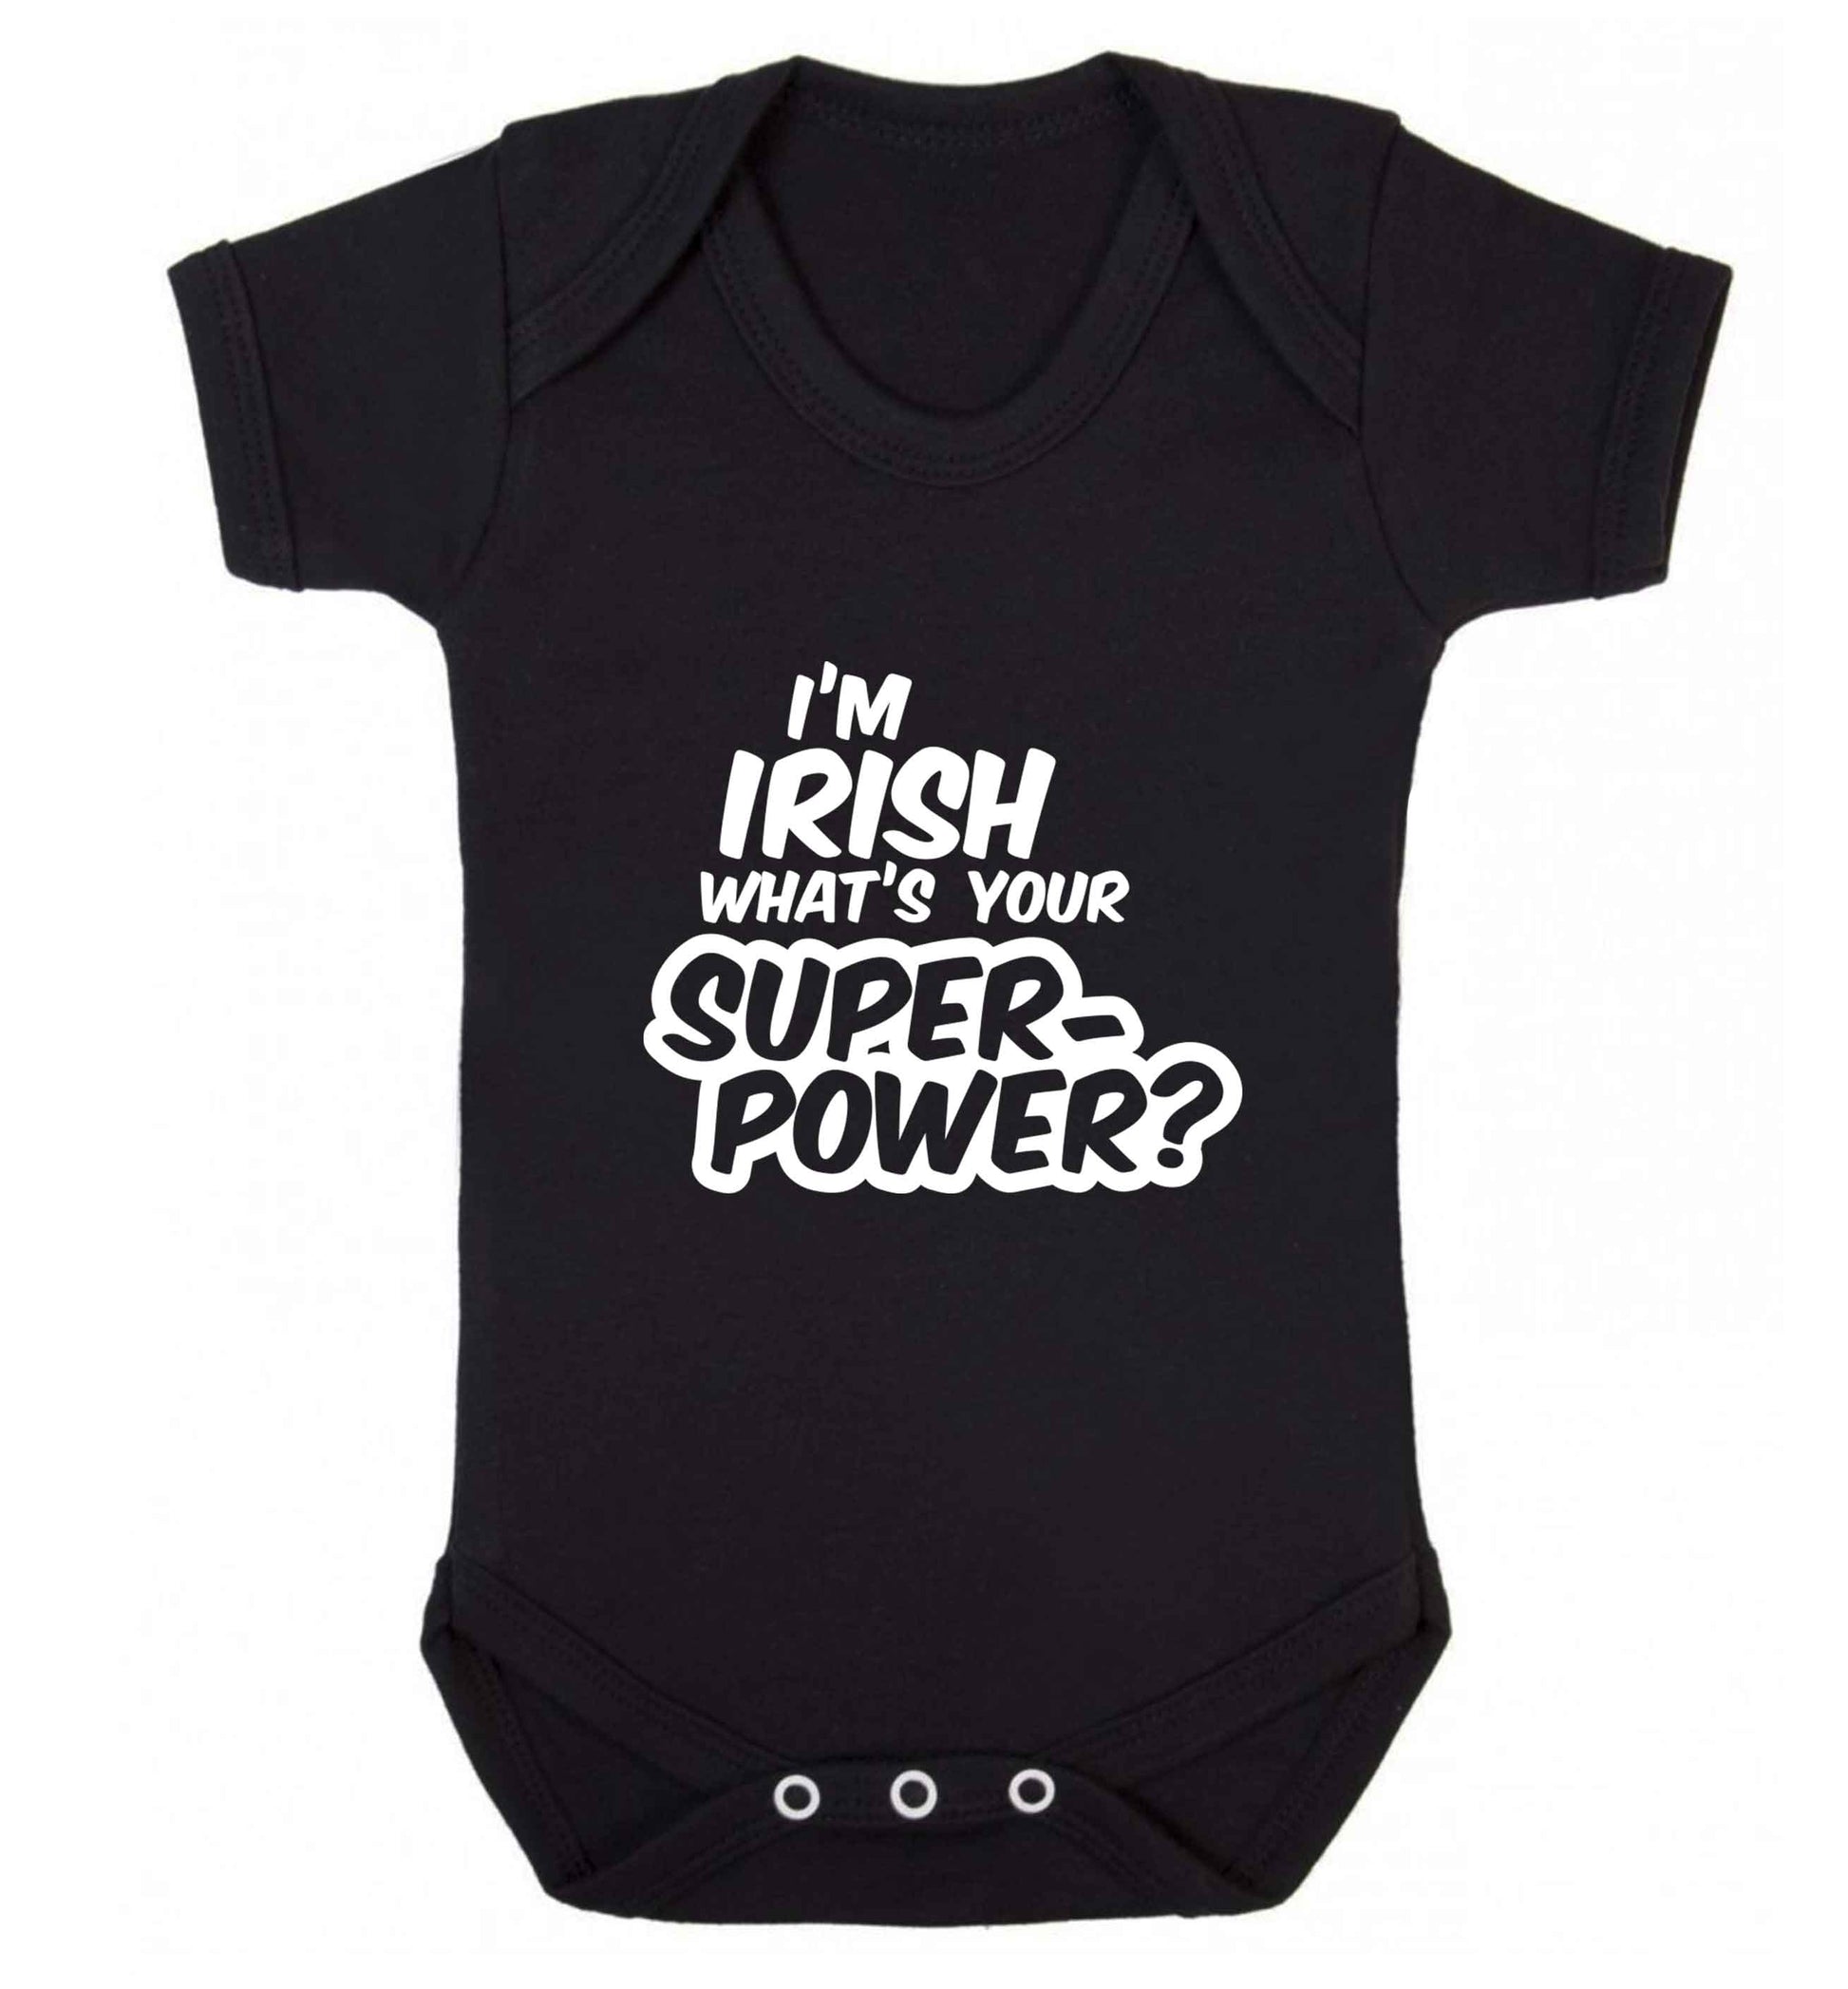 I'm Irish what's your superpower? baby vest black 18-24 months